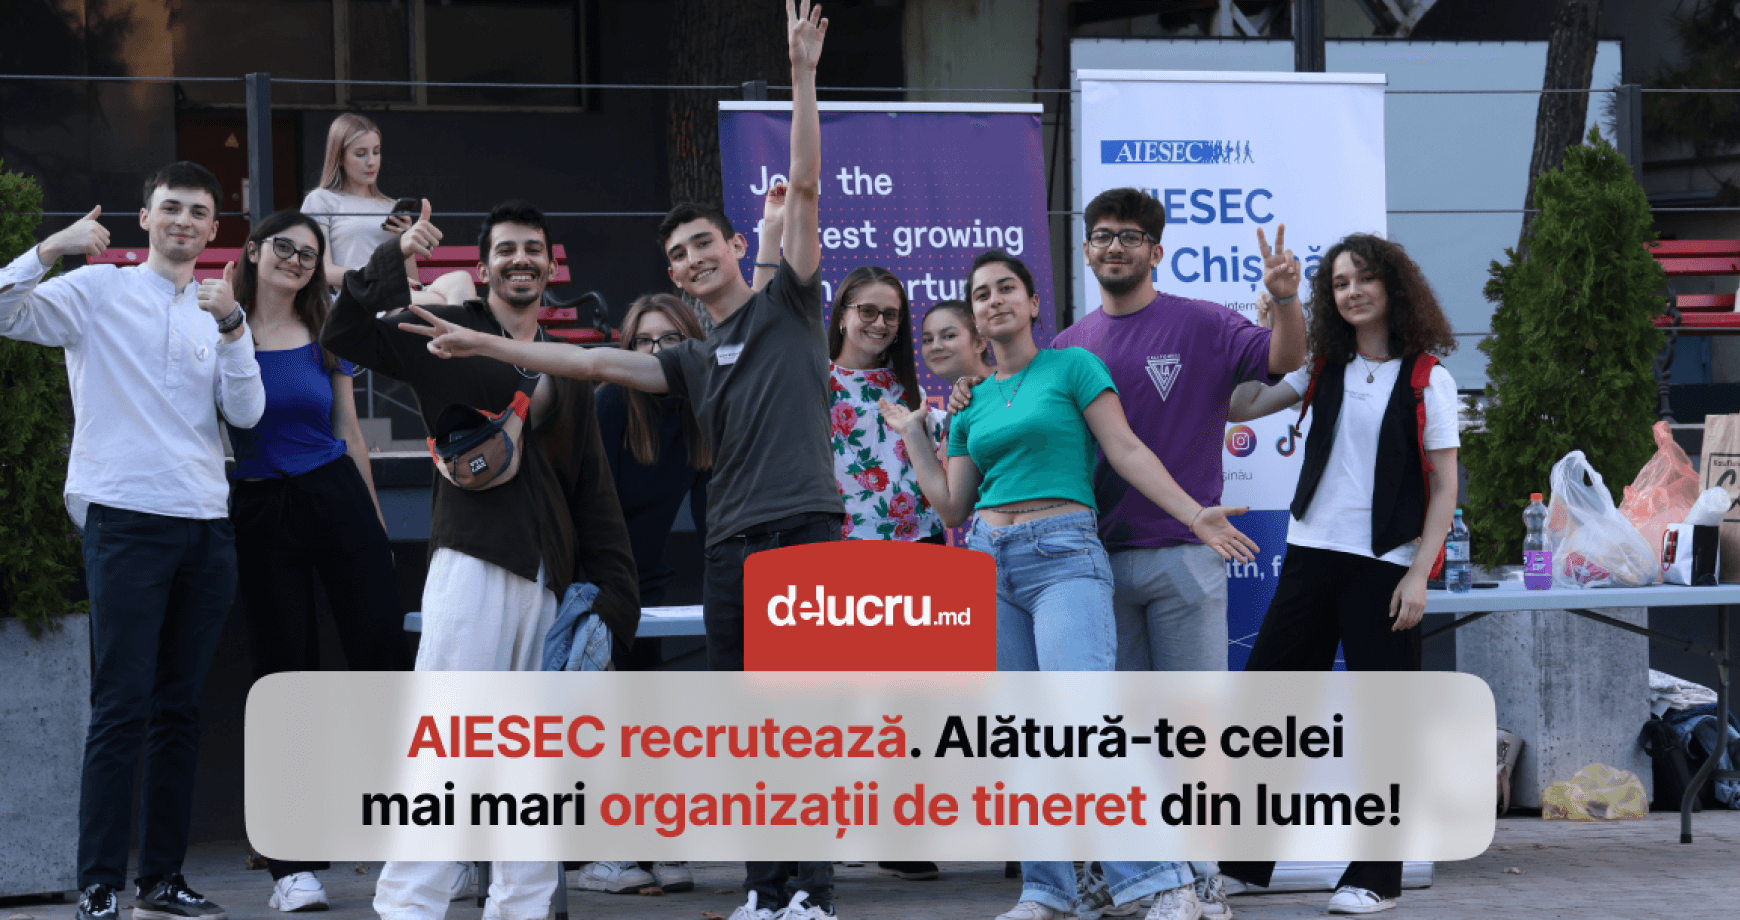 Cum te poate ajuta AIESEC să-ți dezvolți abilități peste medie care să te ajute la angajare